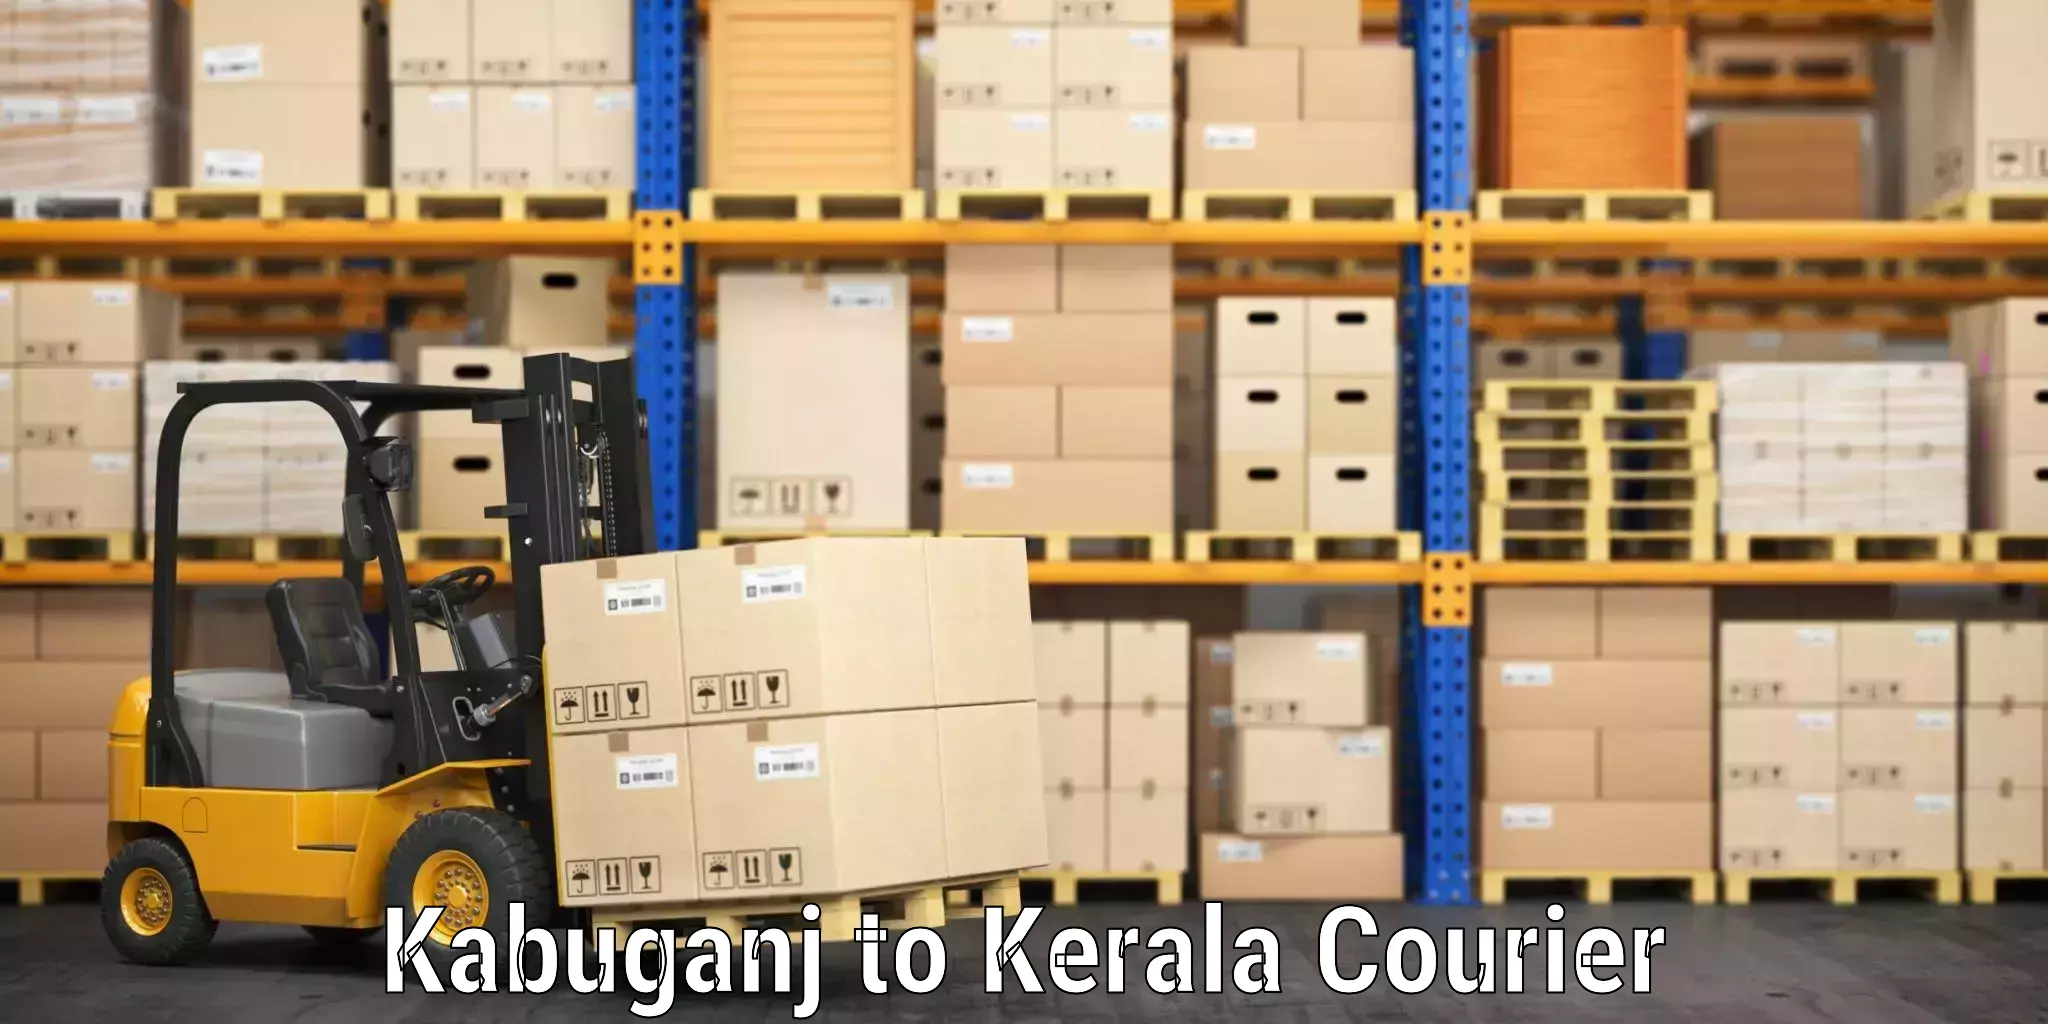 Baggage transport professionals Kabuganj to Kerala